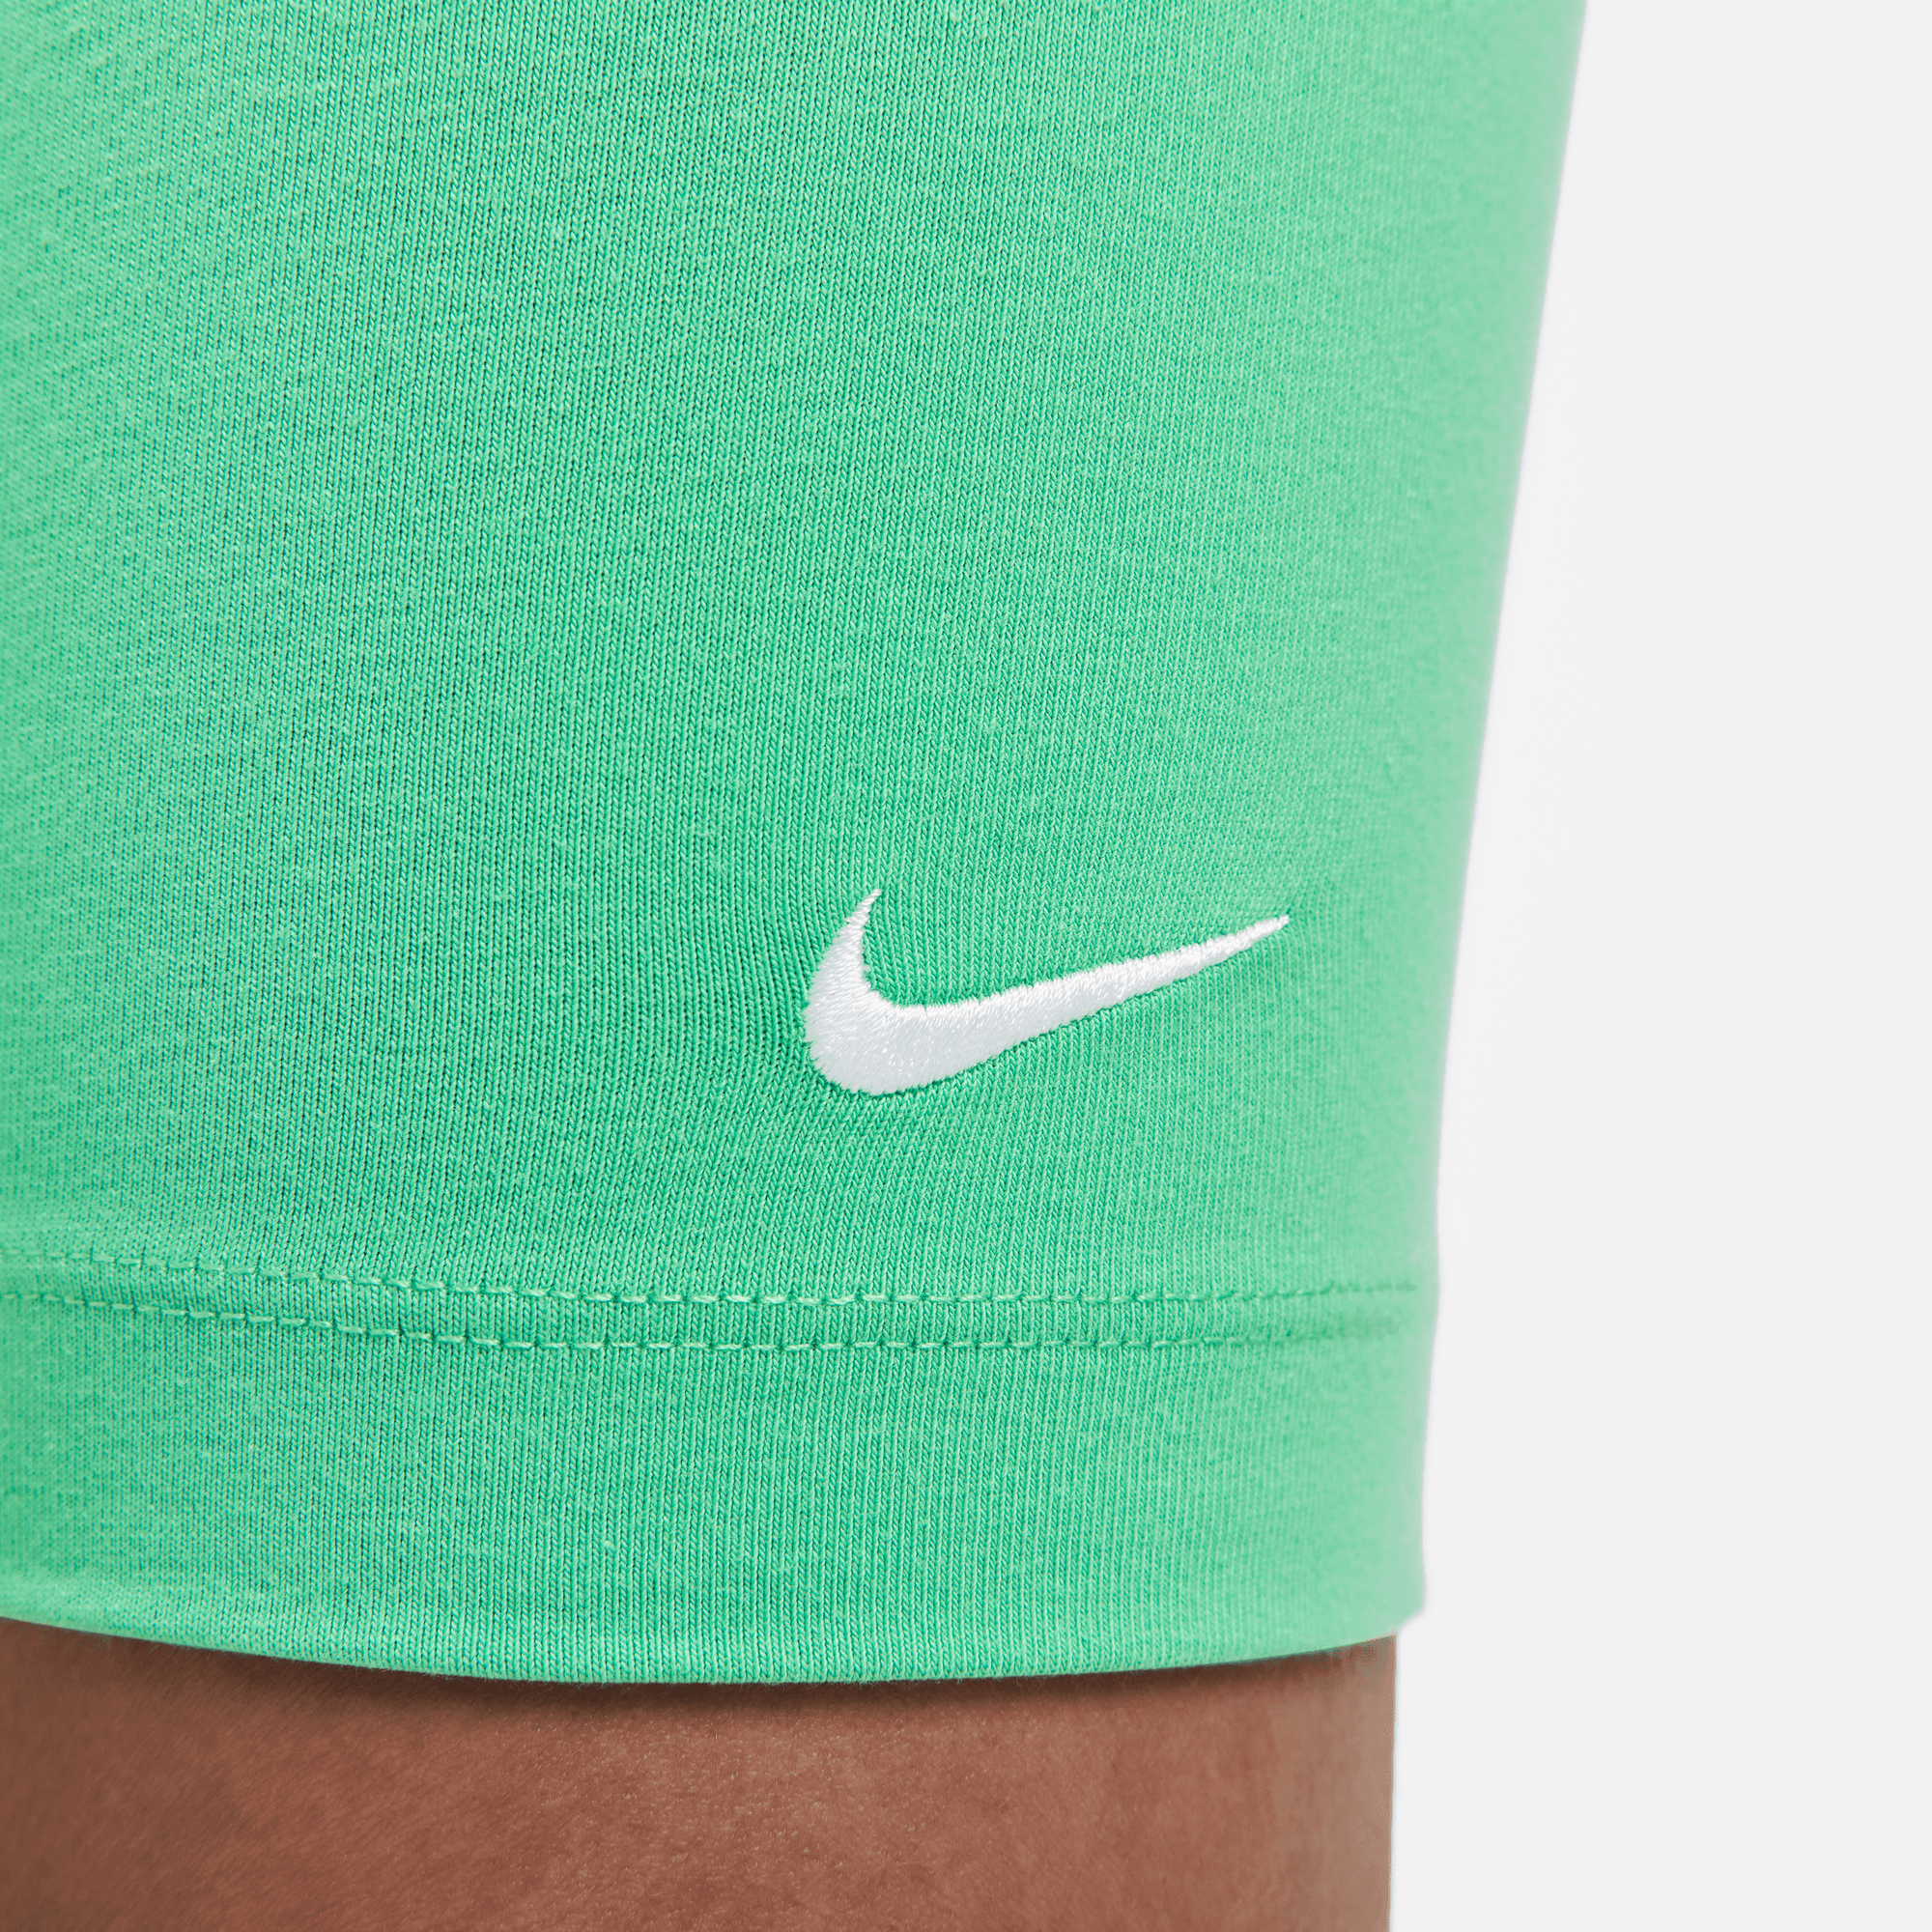 Nike Sportswear Essential Women's Mid-Rise 10 Biker Shorts